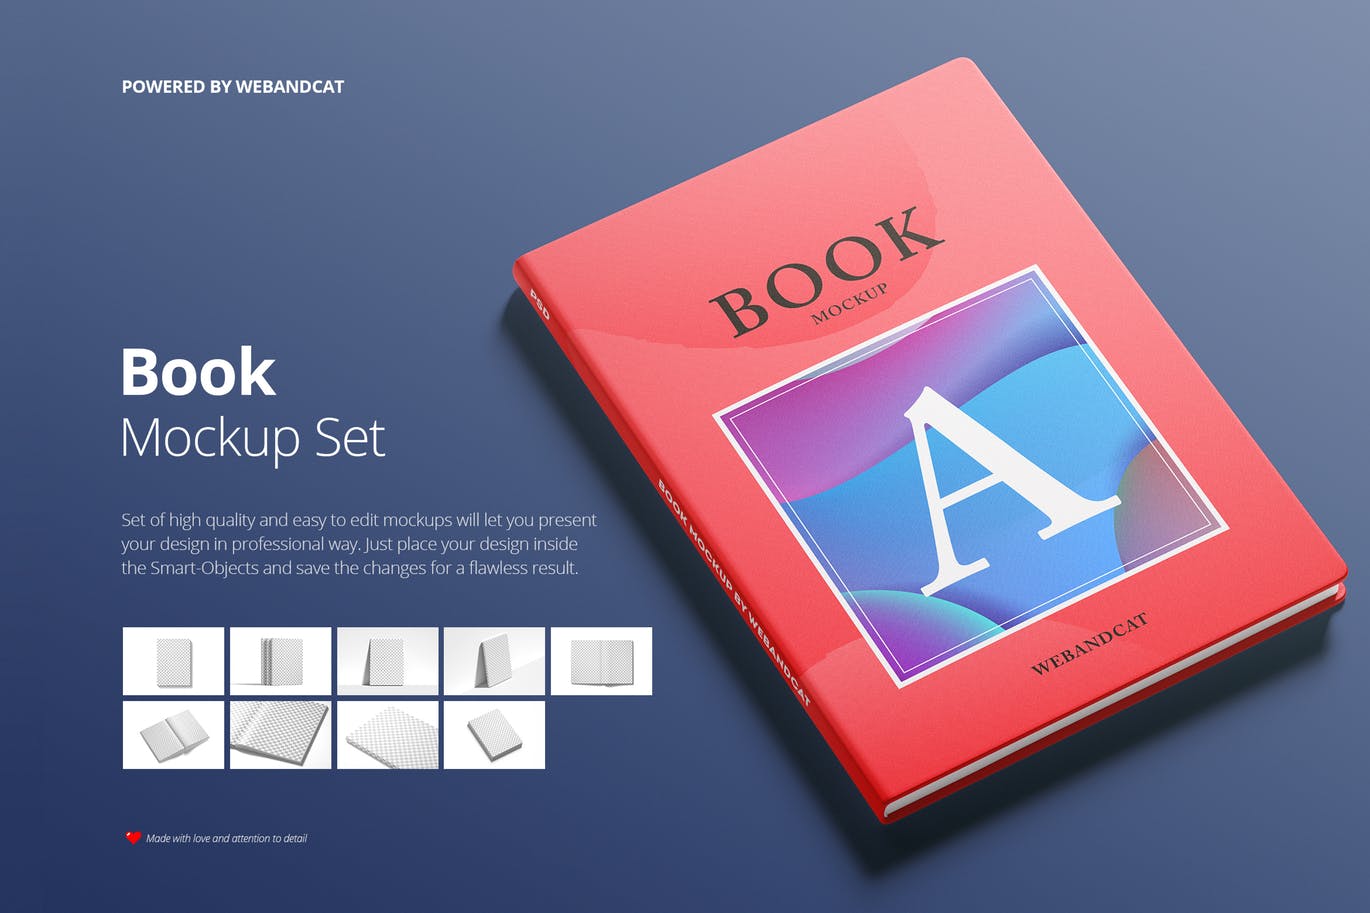 9套高质量且易于编辑记事本/书籍样机第一素材精选 Book Mockup Set插图